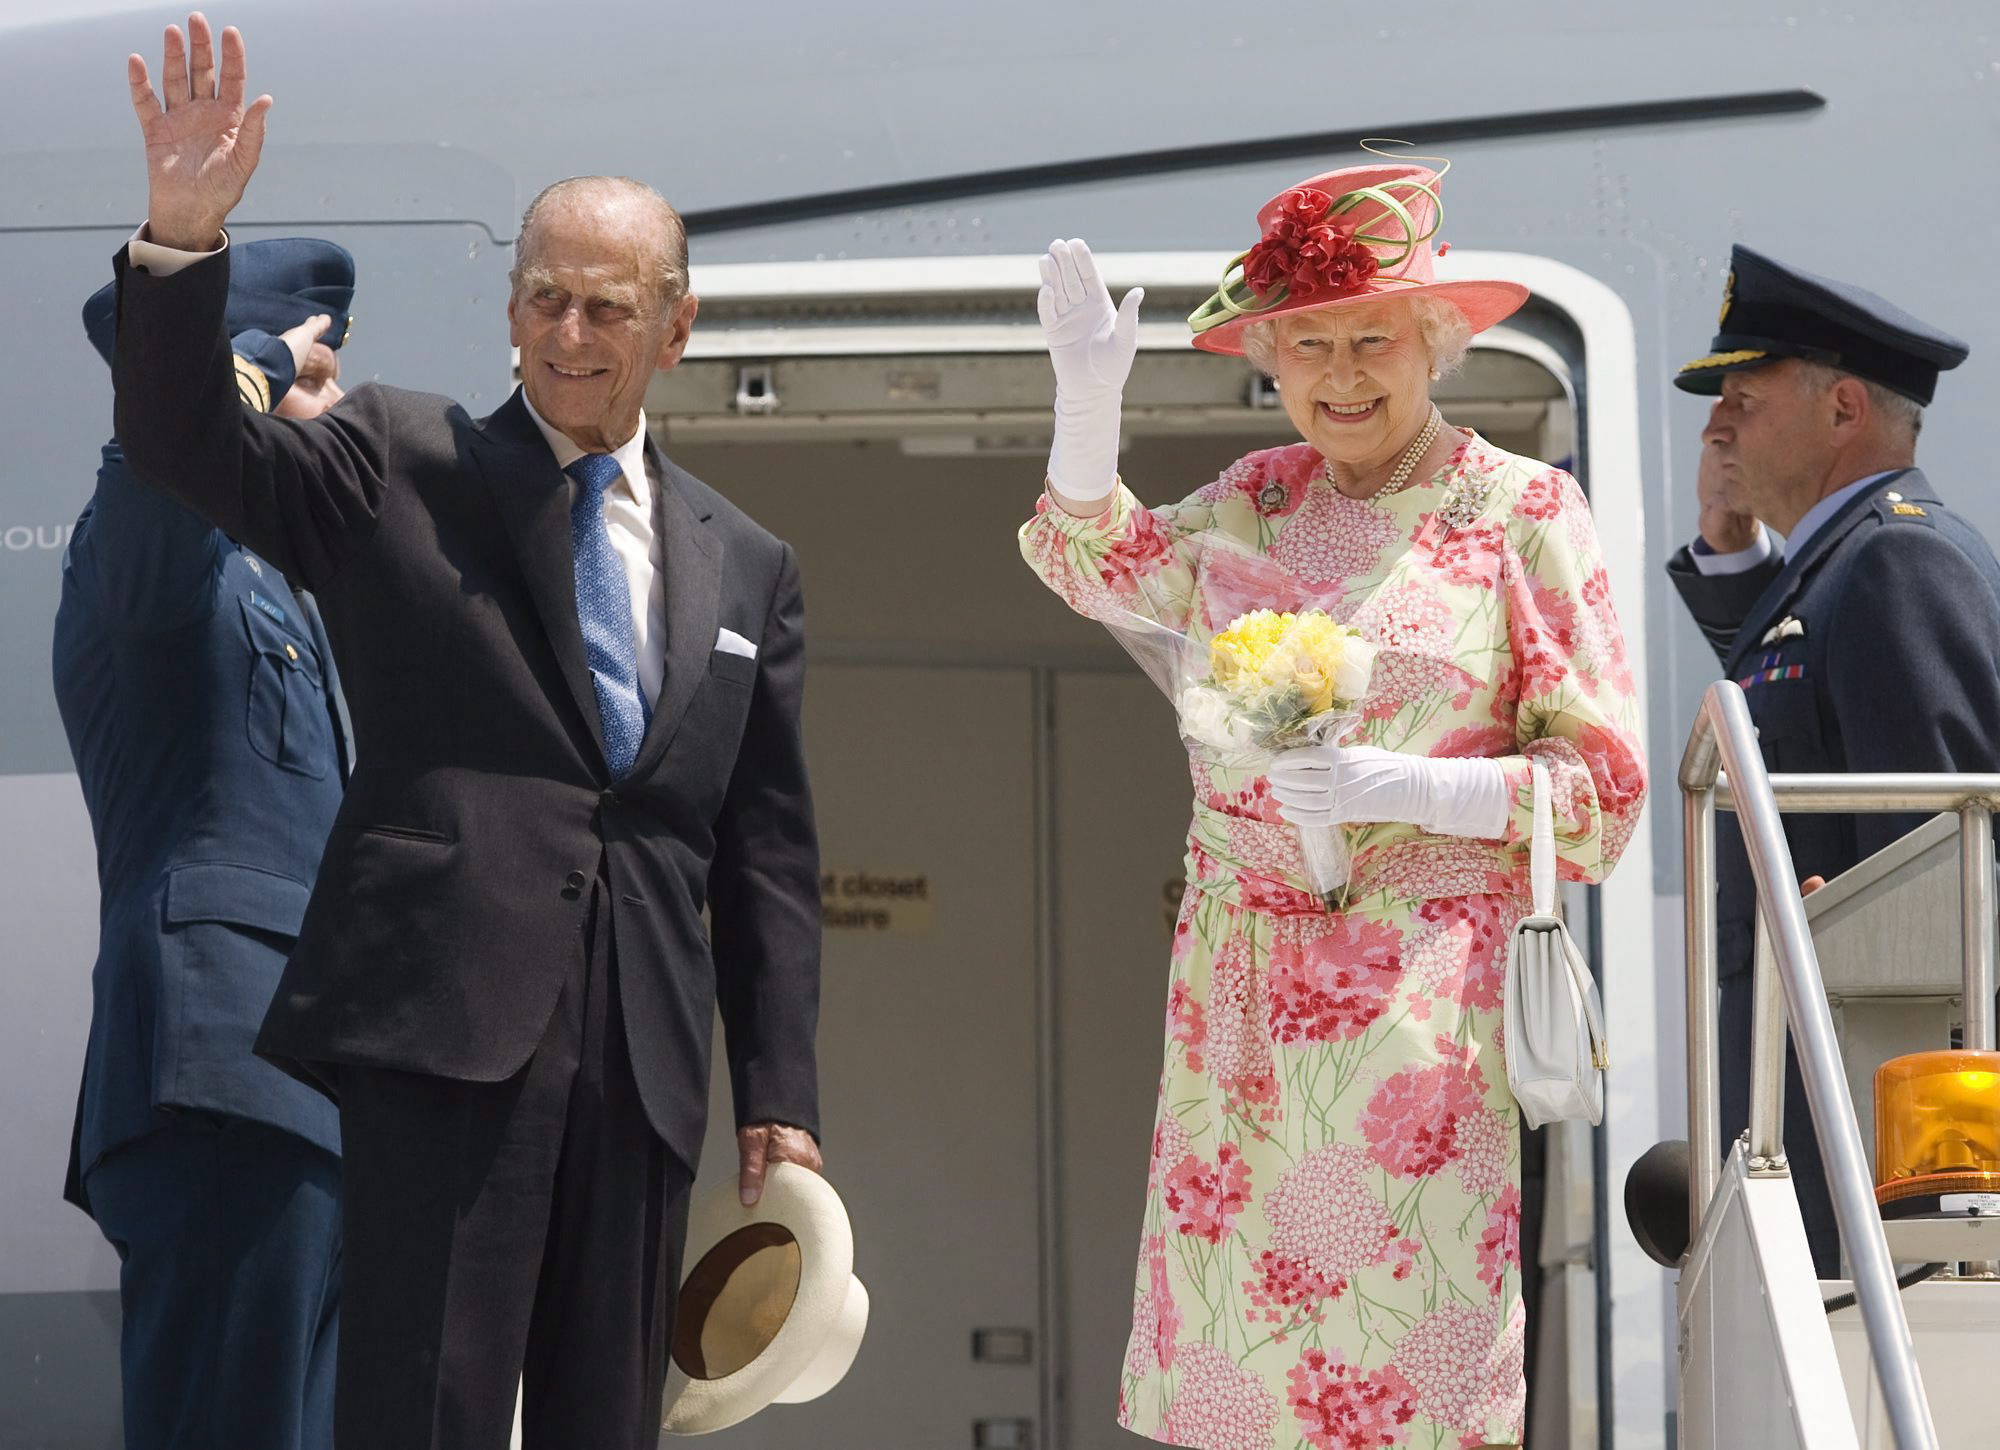 Βασίλισσα Ελισάβετ: Η σημειολογία των καπέλων και των φανταχτερών χρωμάτων στο ντύσιμό της – «Είχε αυθεντικότητα στο στυλ της» λέει ο Βασίλης Ζούλιας